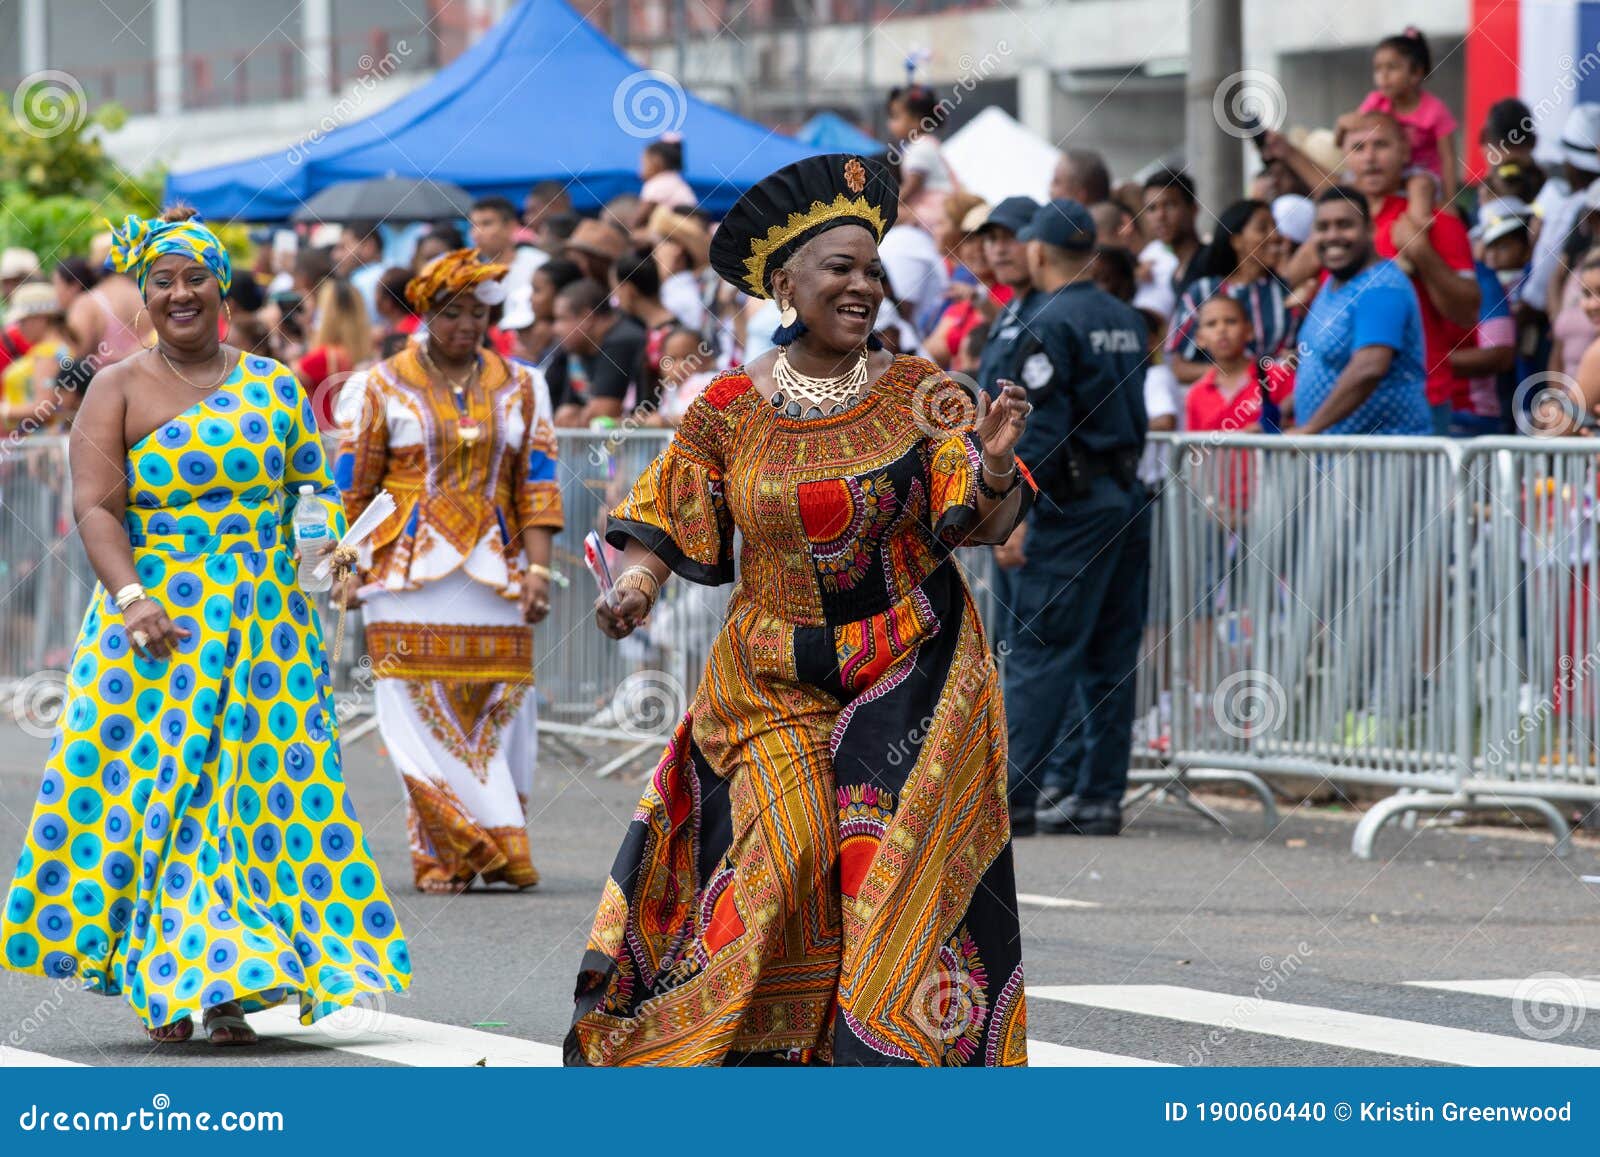 Vestidas Al Estilo Africano Con Vestidos Tradicionales En El Desfile De La Ciudad De Panama Imagen editorial - Imagen alineada, celebraciones: 190060440